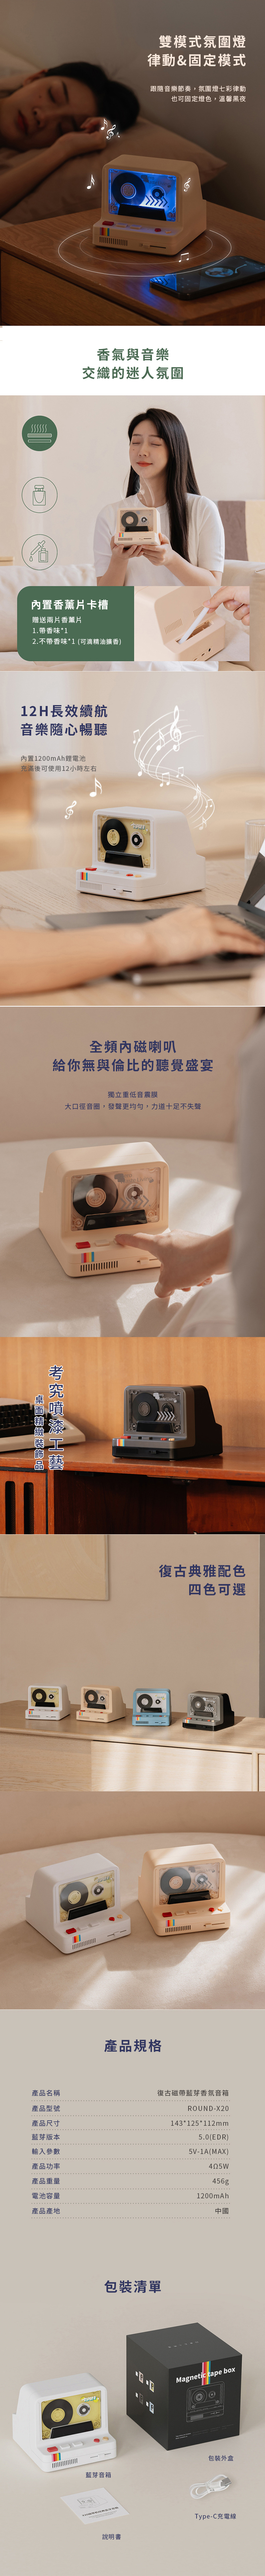 【3/29~5/31畢業季88折優惠】創意小物館 復古磁帶藍芽香氛音箱 寶寶粉